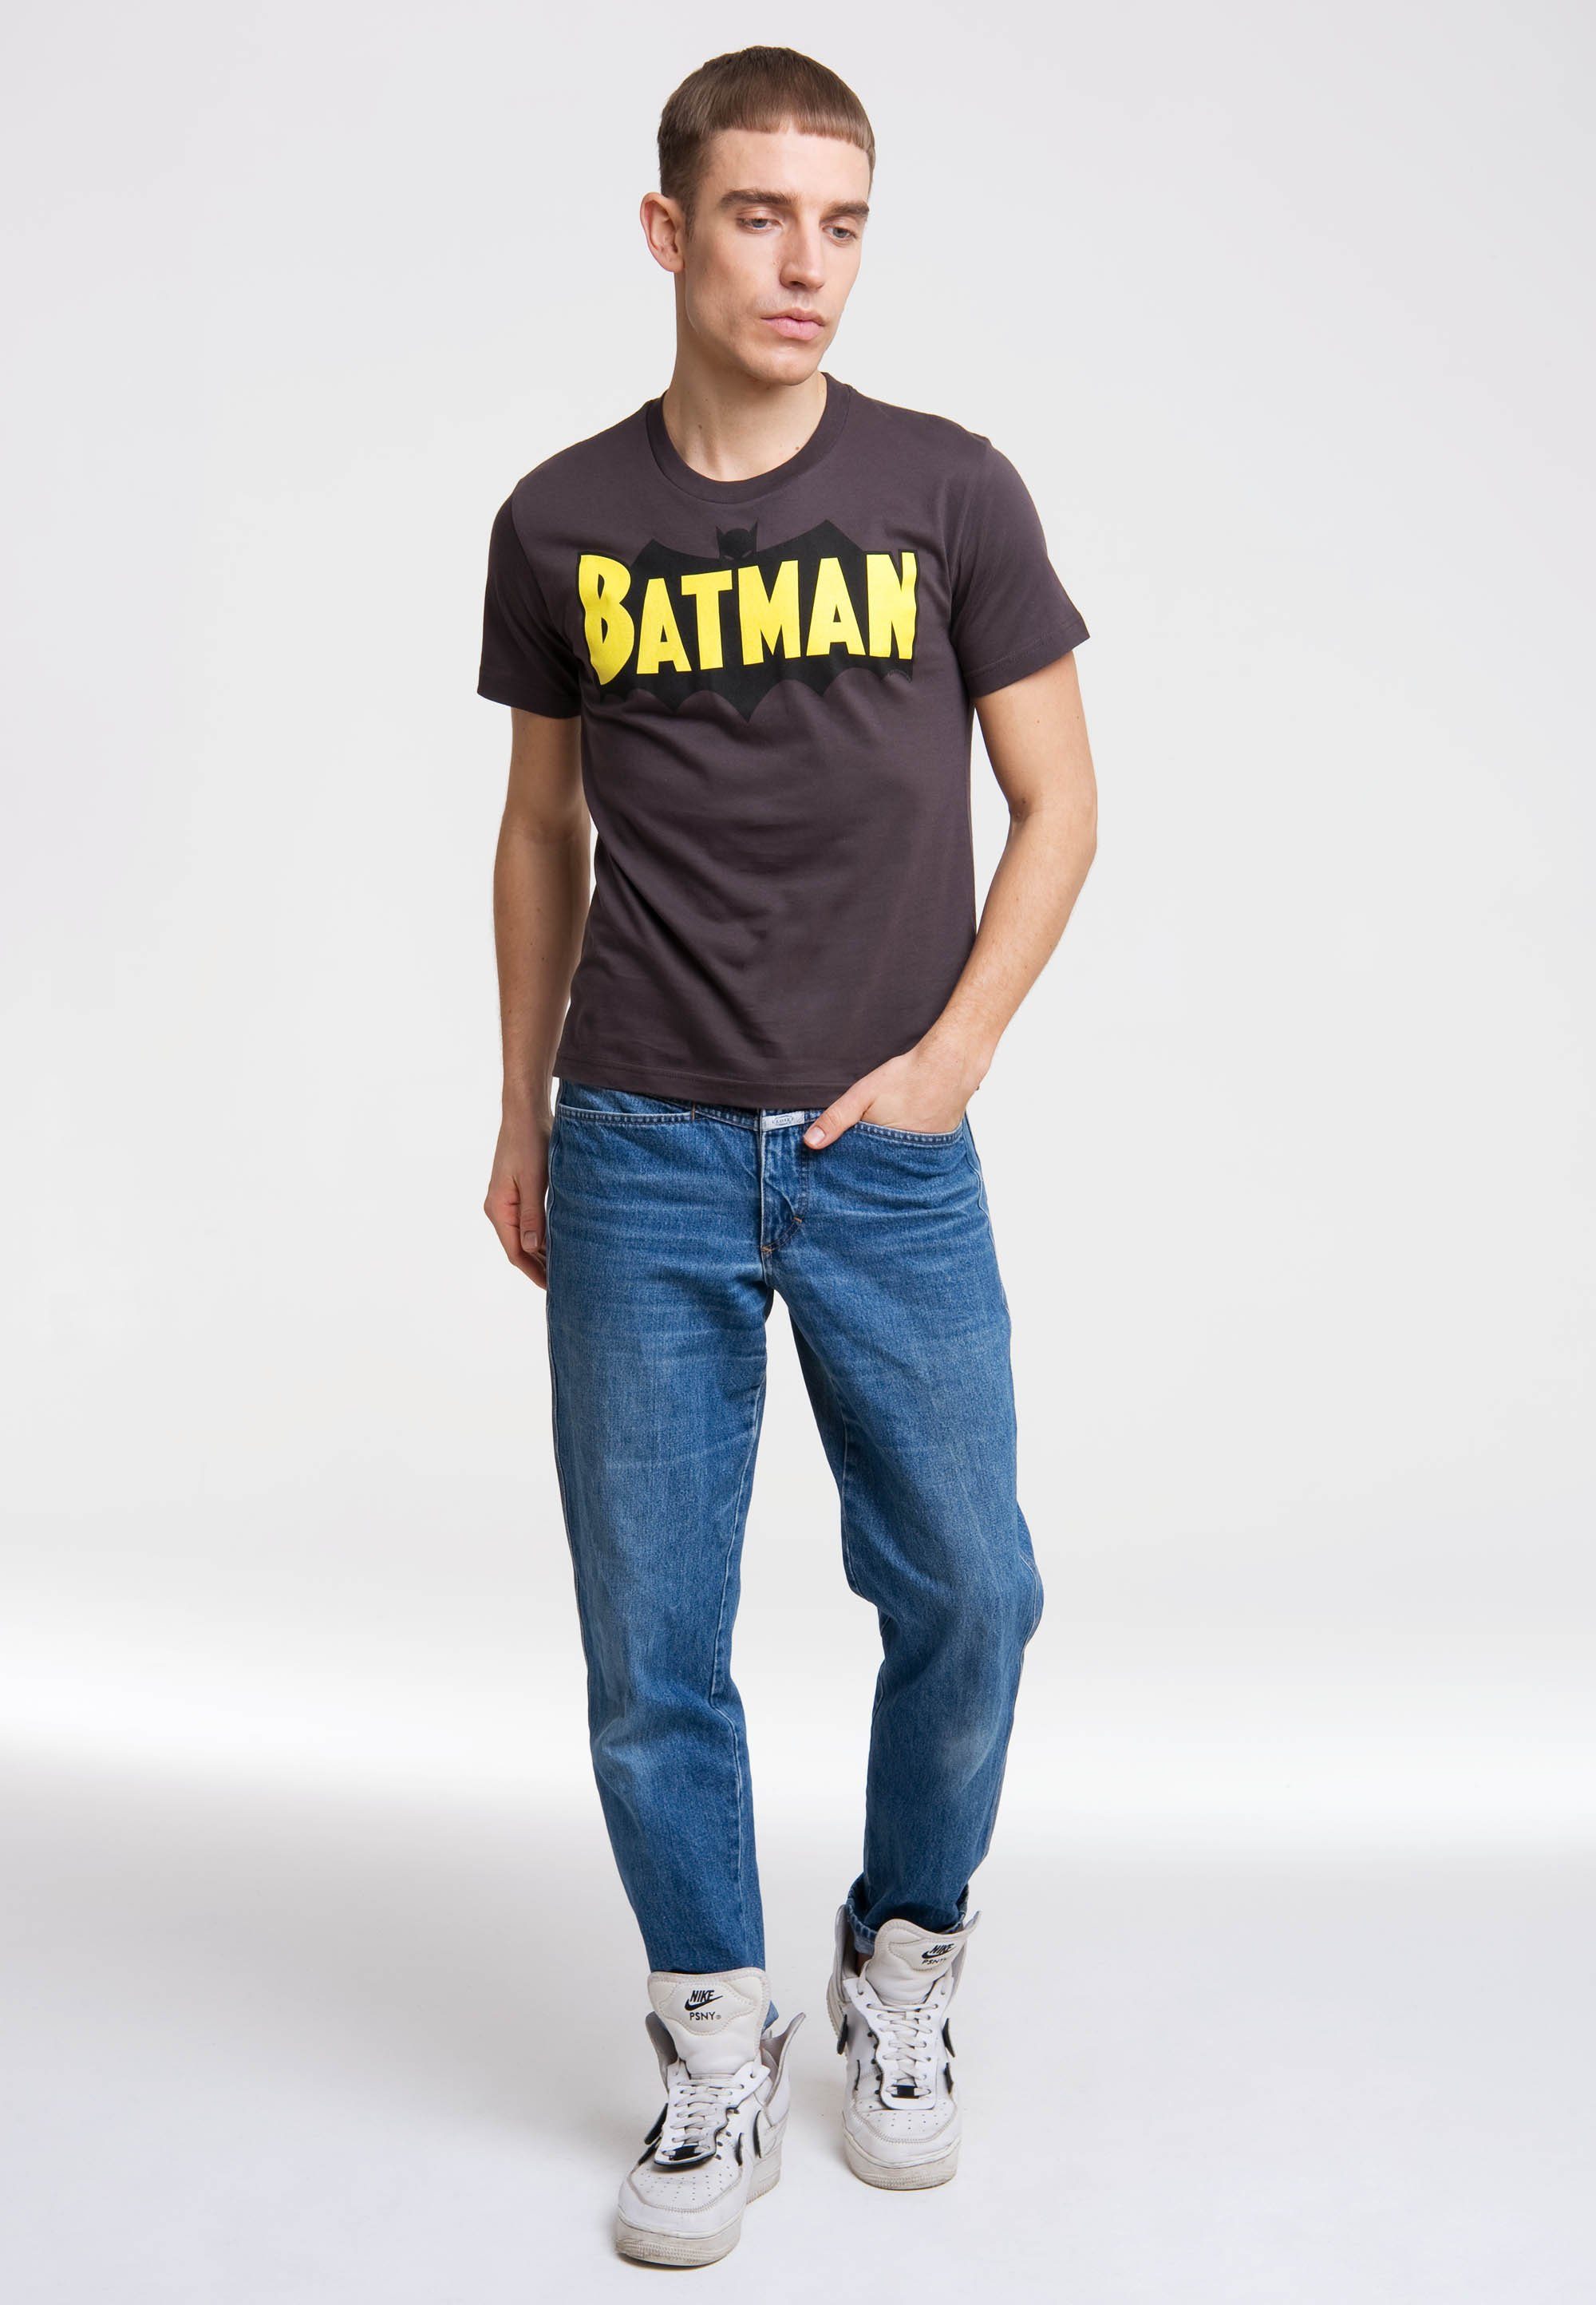 LOGOSHIRT T-Shirt BATMAN - WINGS mit coolem Superhelden-Logo, Aus  hochwertiger, weicher Baumwolle für tollen Komfort